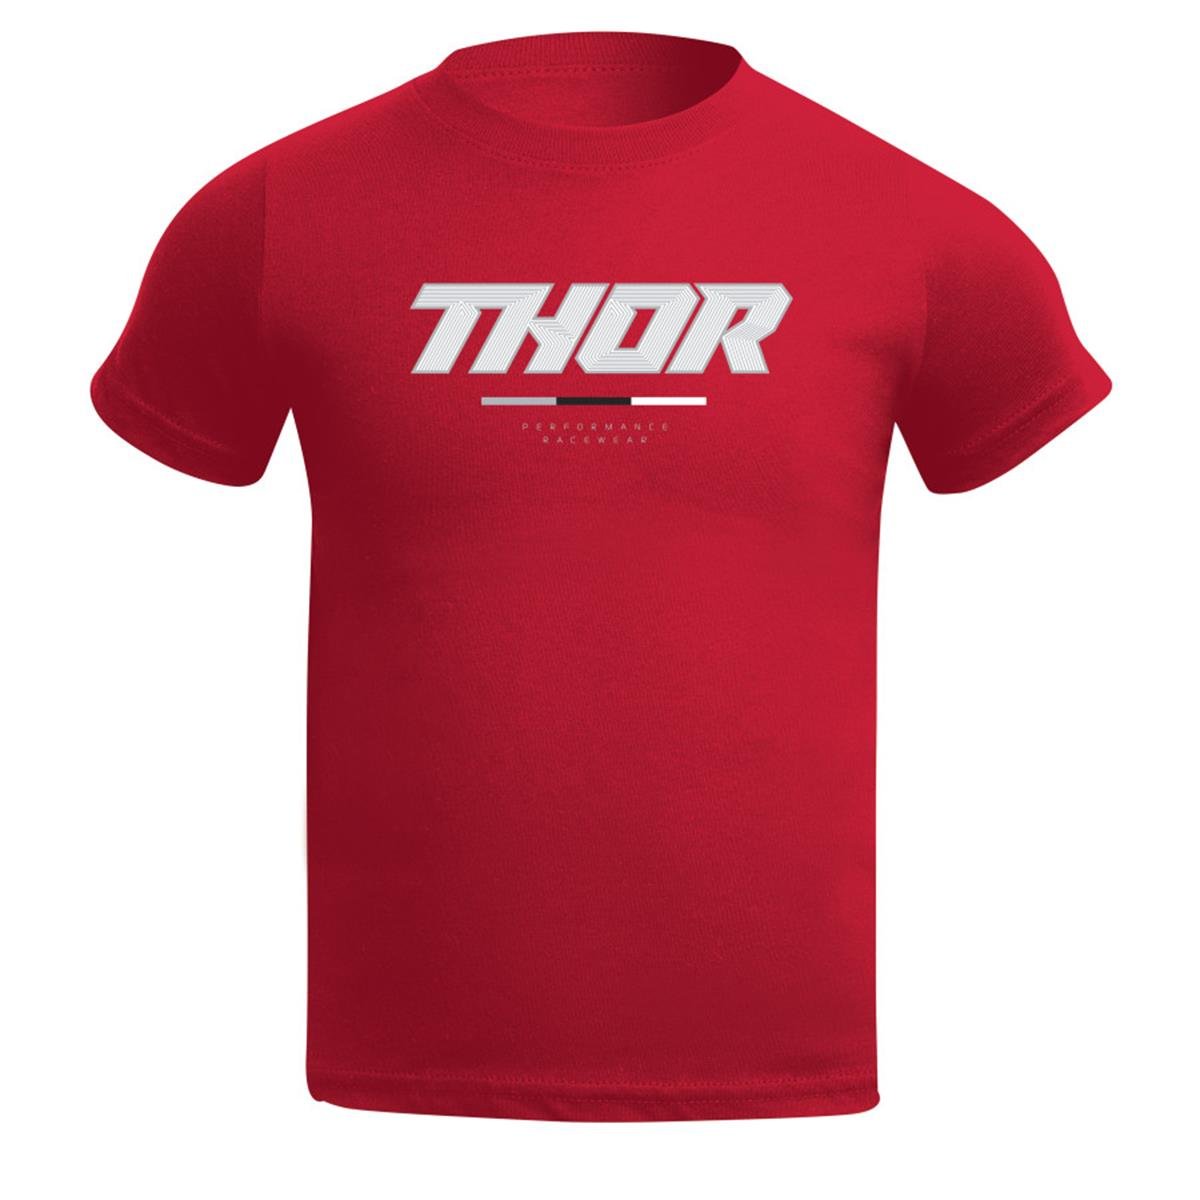 Thor Kids T-Shirt Toddler